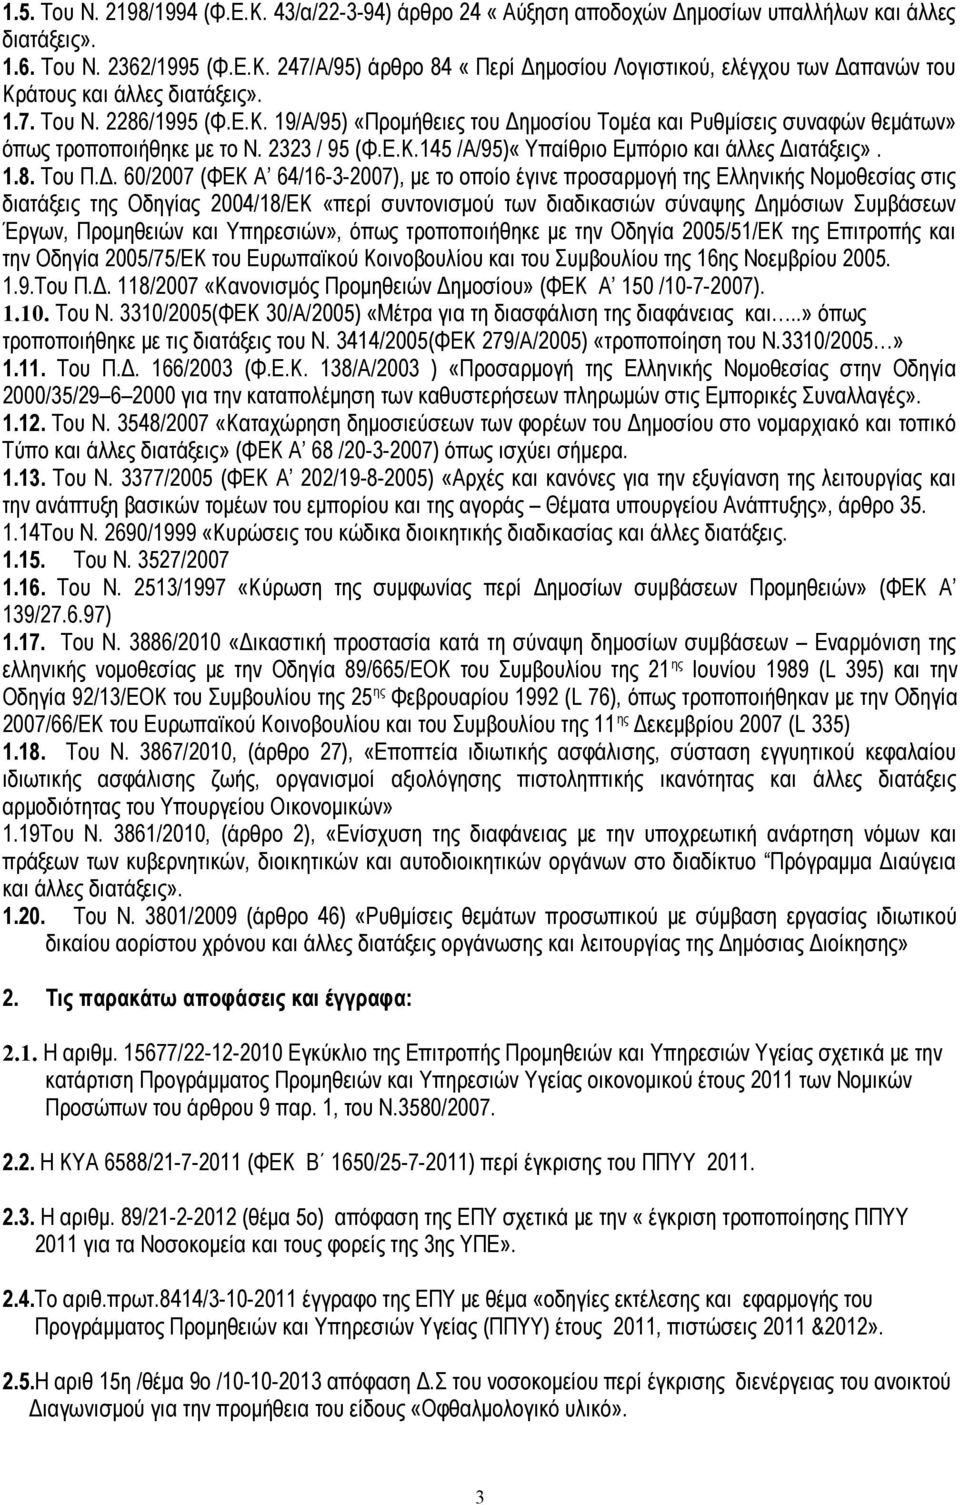 Δ. 60/2007 (ΦΕΚ Α 64/16-3-2007), με το οποίο έγινε προσαρμογή της Ελληνικής Νομοθεσίας στις διατάξεις της Οδηγίας 2004/18/ΕΚ «περί συντονισμού των διαδικασιών σύναψης Δημόσιων Συμβάσεων Έργων,